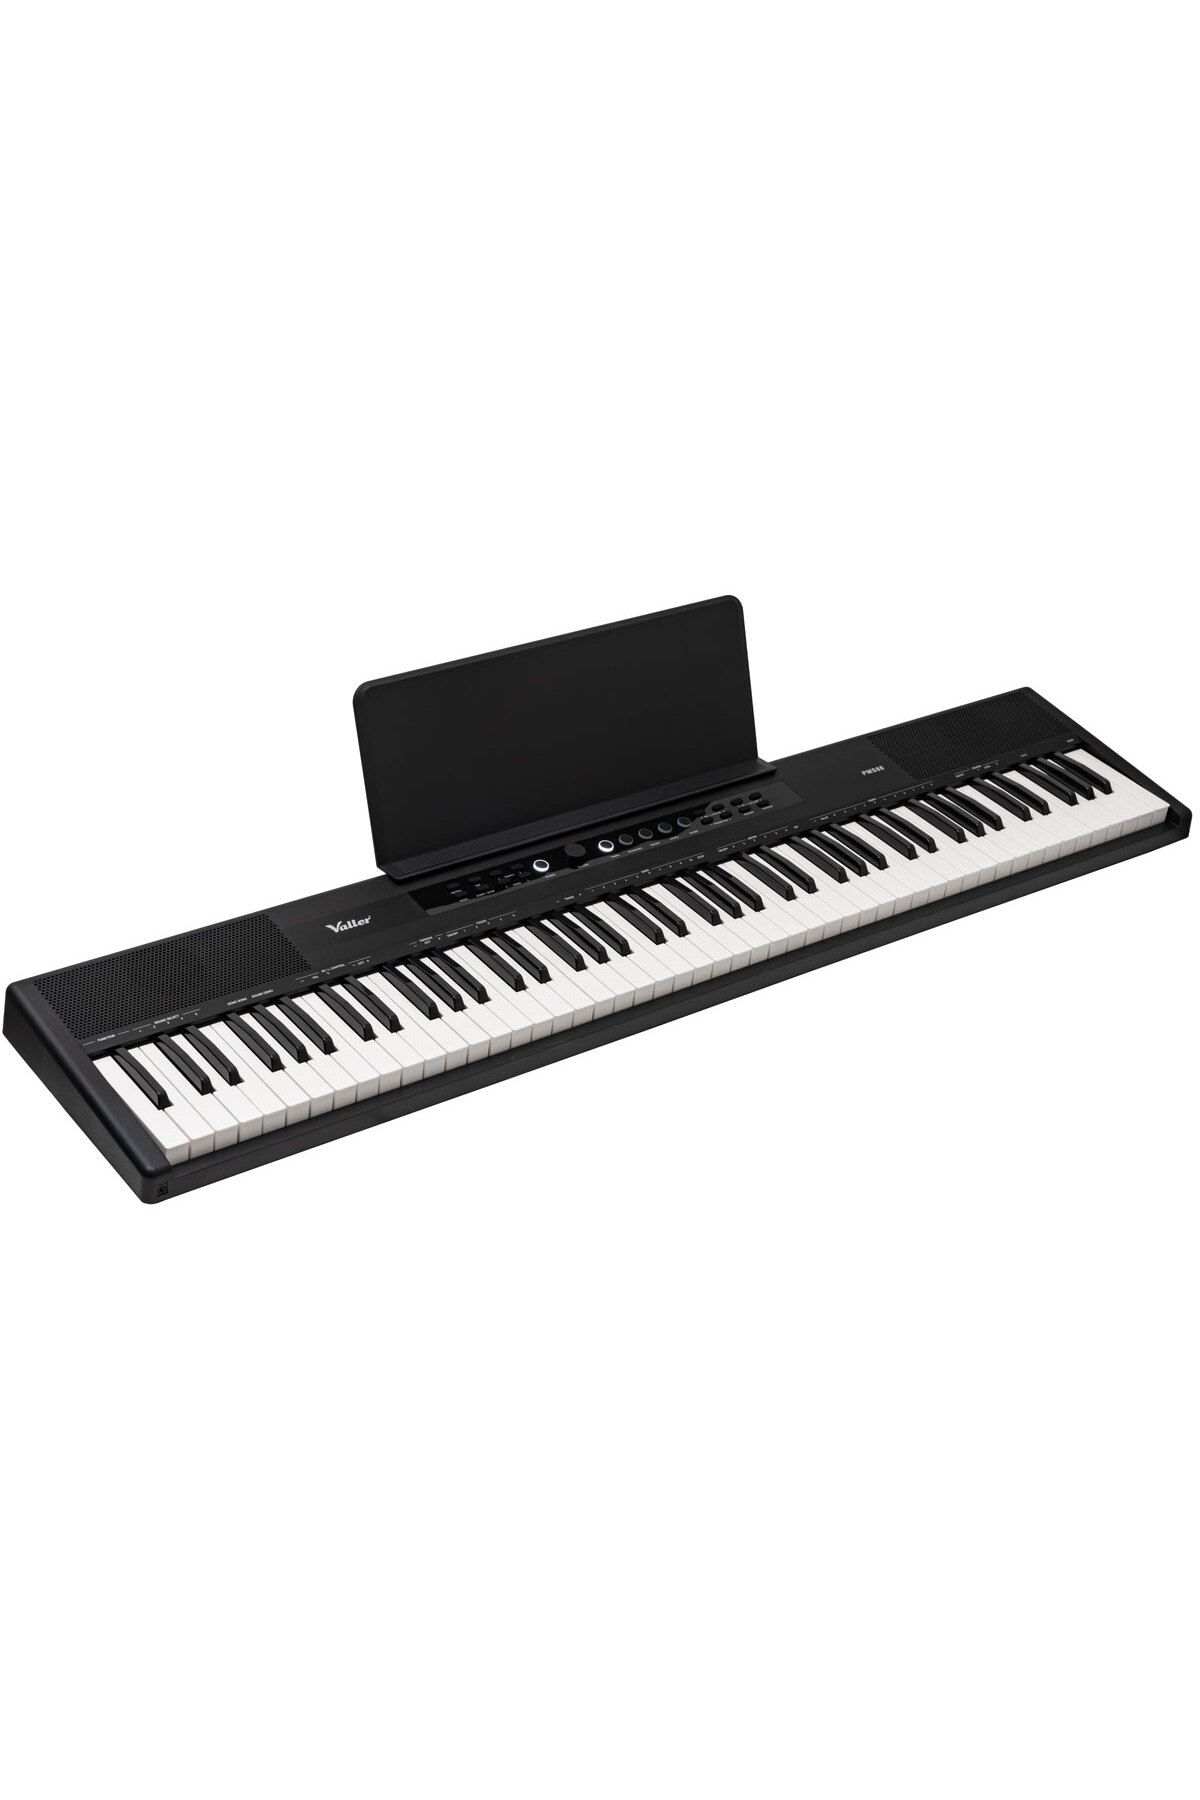 VALLER PMS88 Yarı Ağırlıklı Standart Piyano Tuşlu Dijital Taşınabilir Piyano